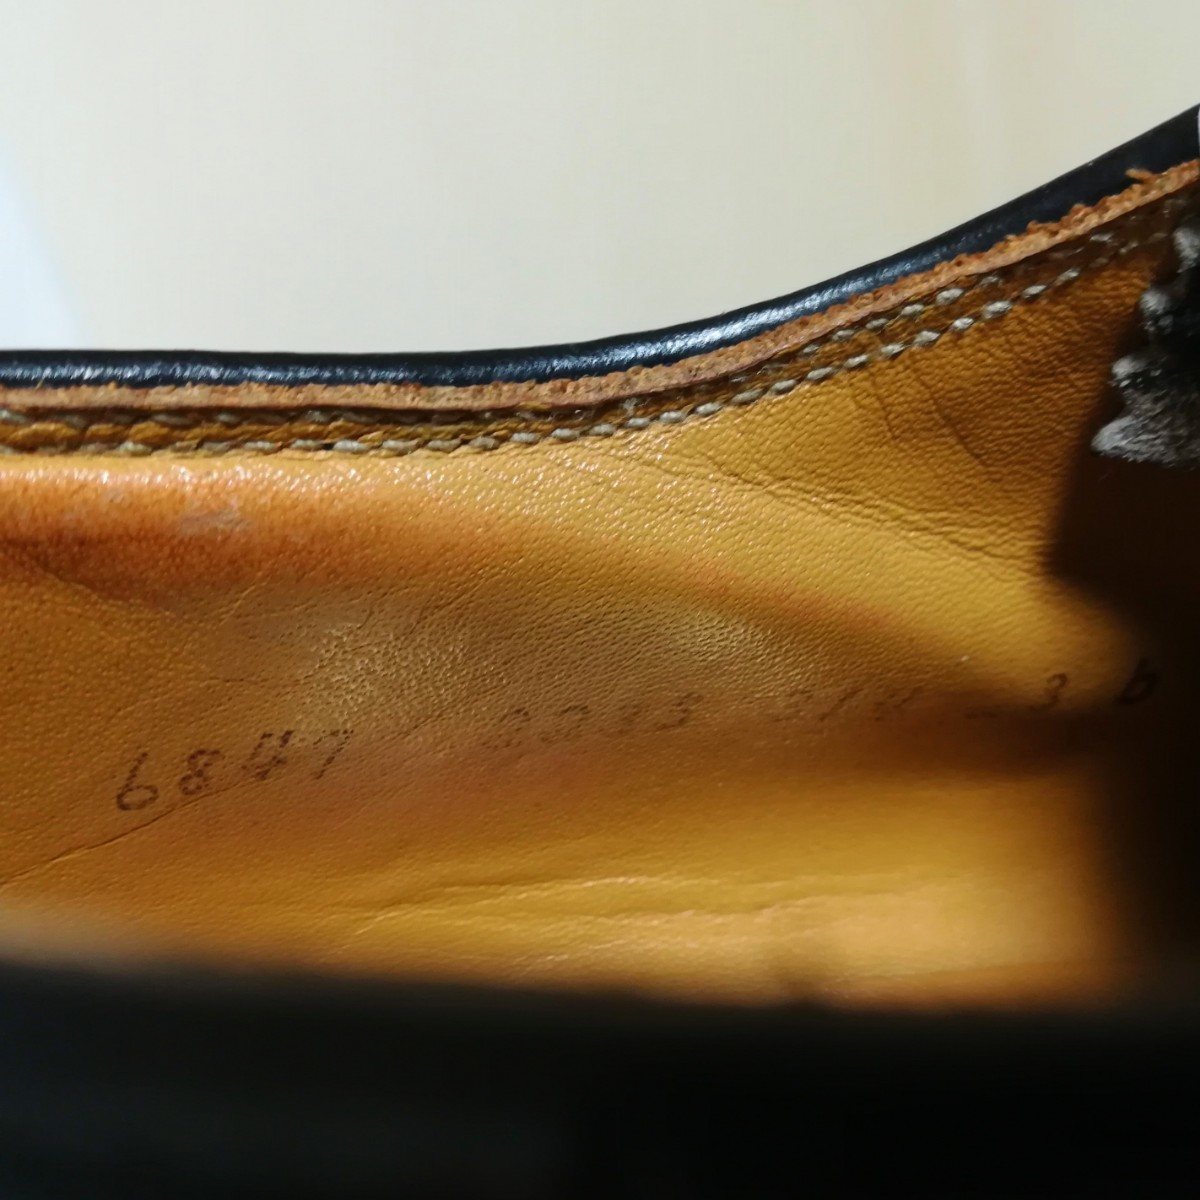 【REGAL】リーガル インペリアルグレード 革靴 ウイングチップ 2235 メンズ ビジネスシューズ ブラック